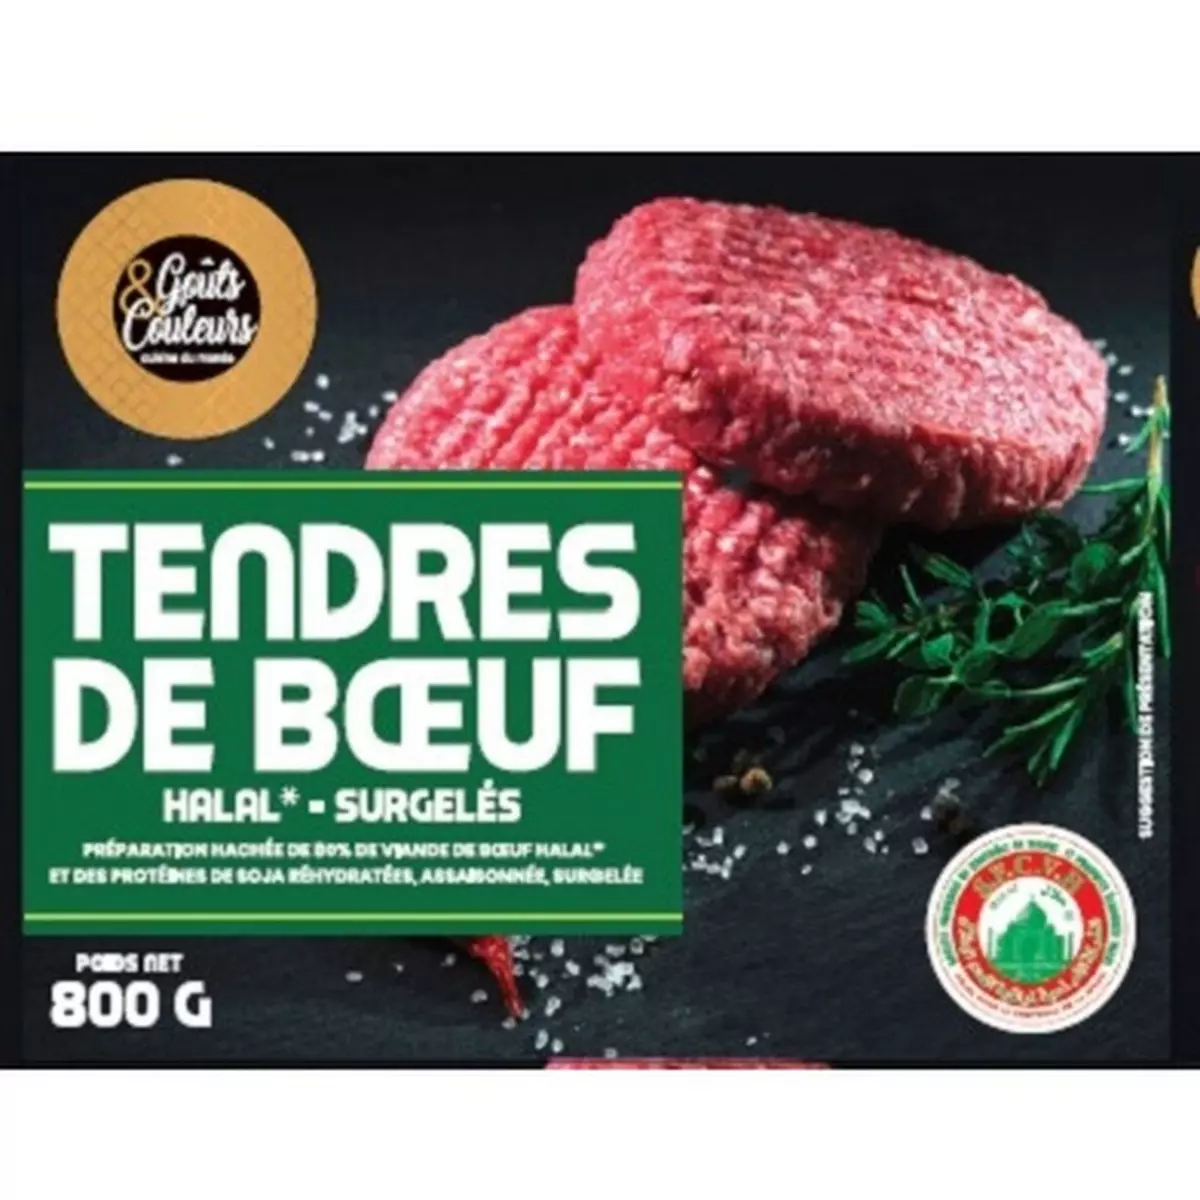 GOUTS & COULEURS Steak haché de bouef halal 10 pièces 800g